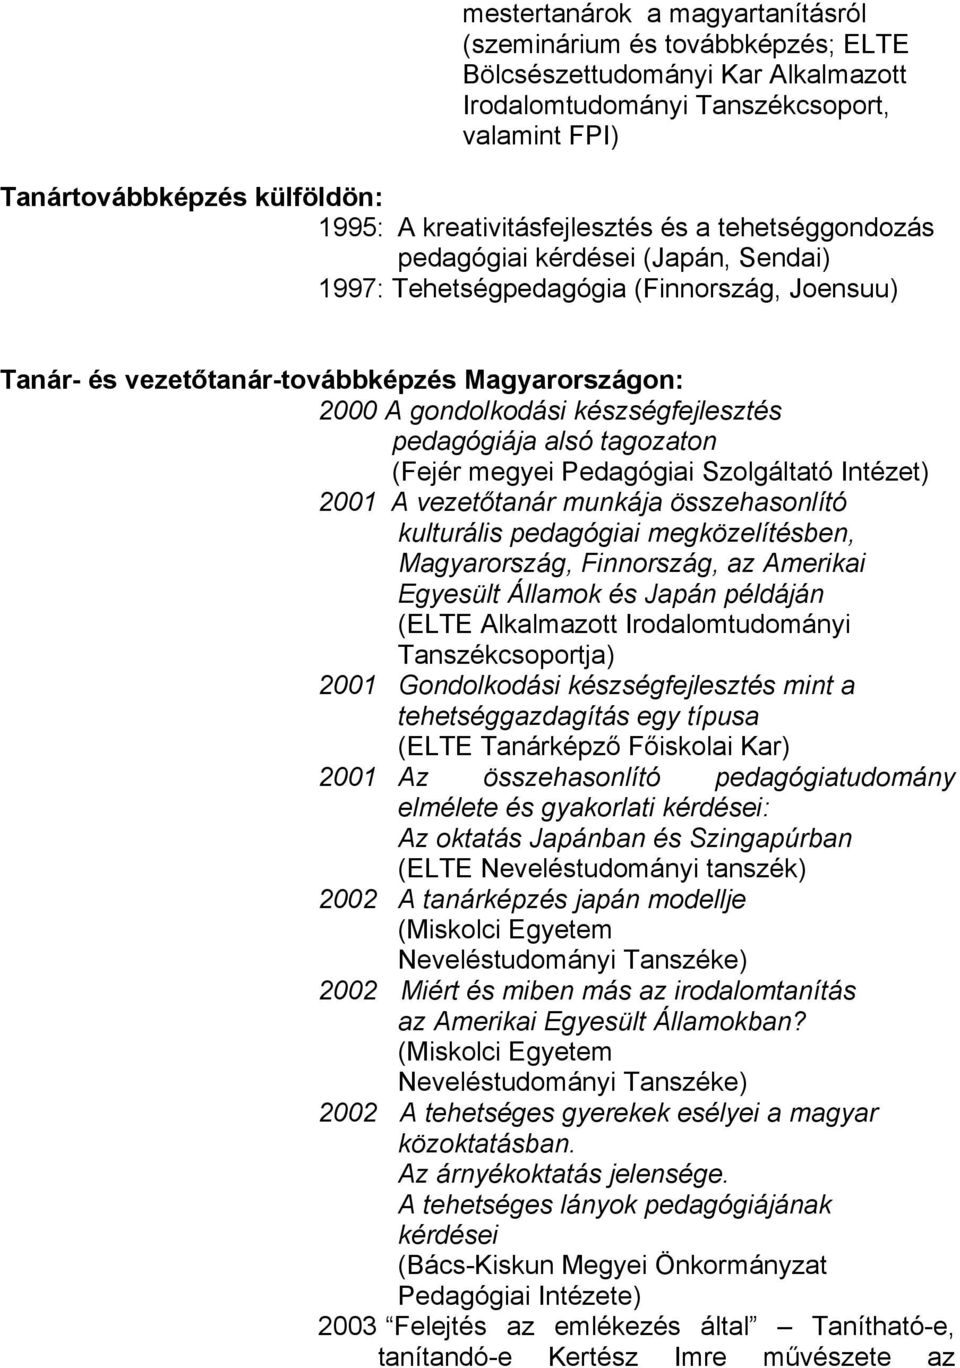 (Fejér megyei Pedagógiai Szolgáltató Intézet) 2001 A vezetőtanár munkája összehasonlító kulturális pedagógiai megközelítésben, Magyarország, Finnország, az Amerikai Egyesült Államok és Japán példáján